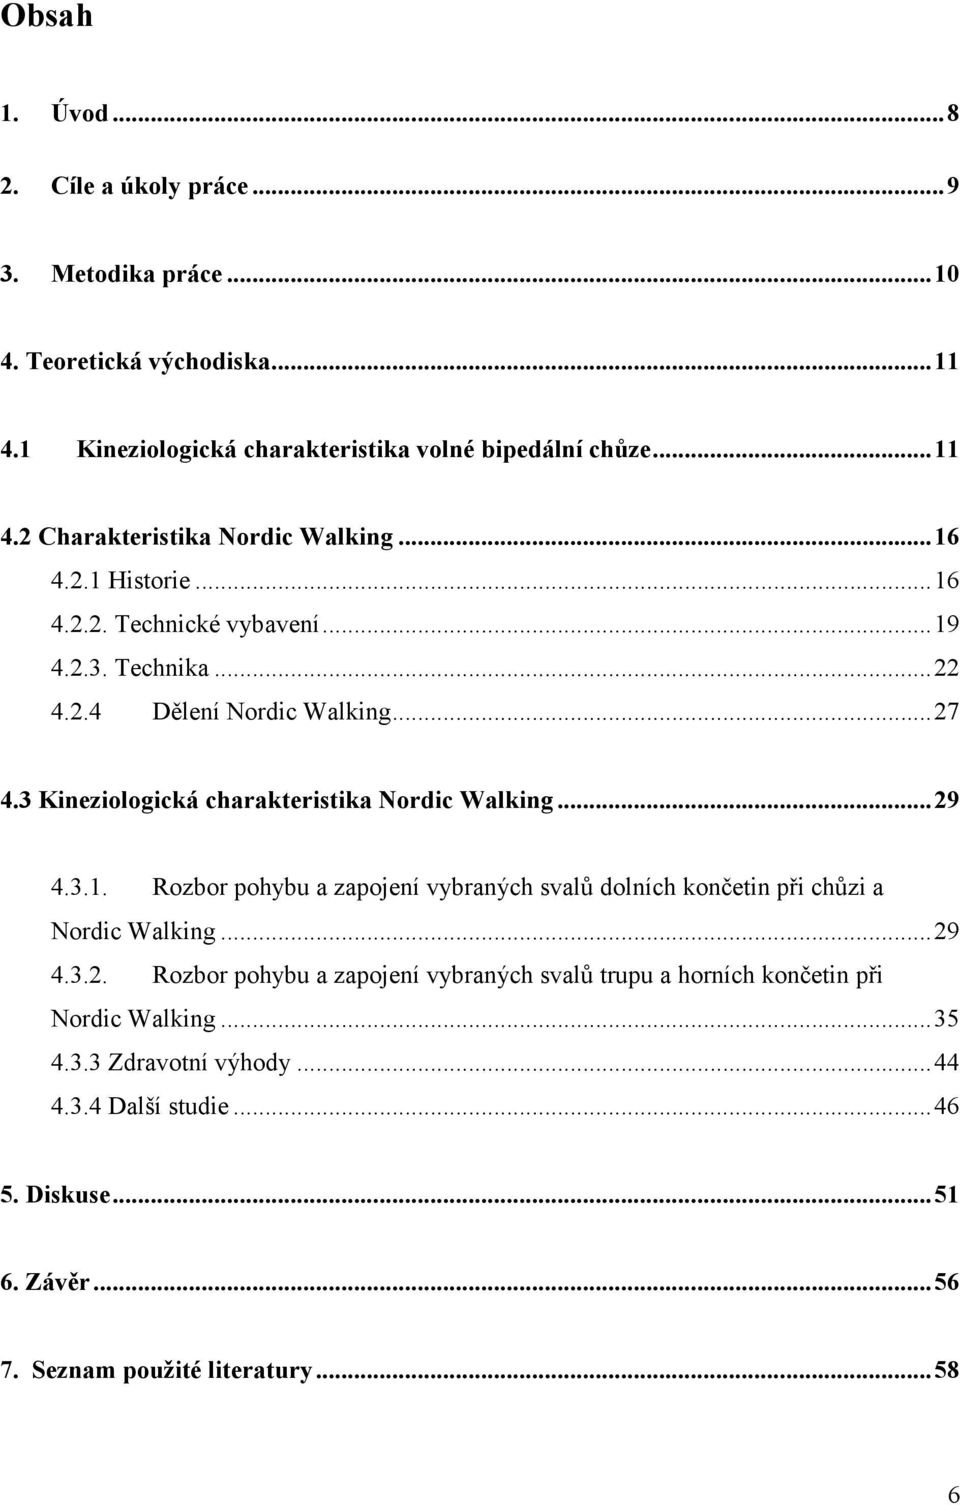 3.1. Rozbor pohybu a zapojení vybraných svalů dolních končetin při chůzi a Nordic Walking...29